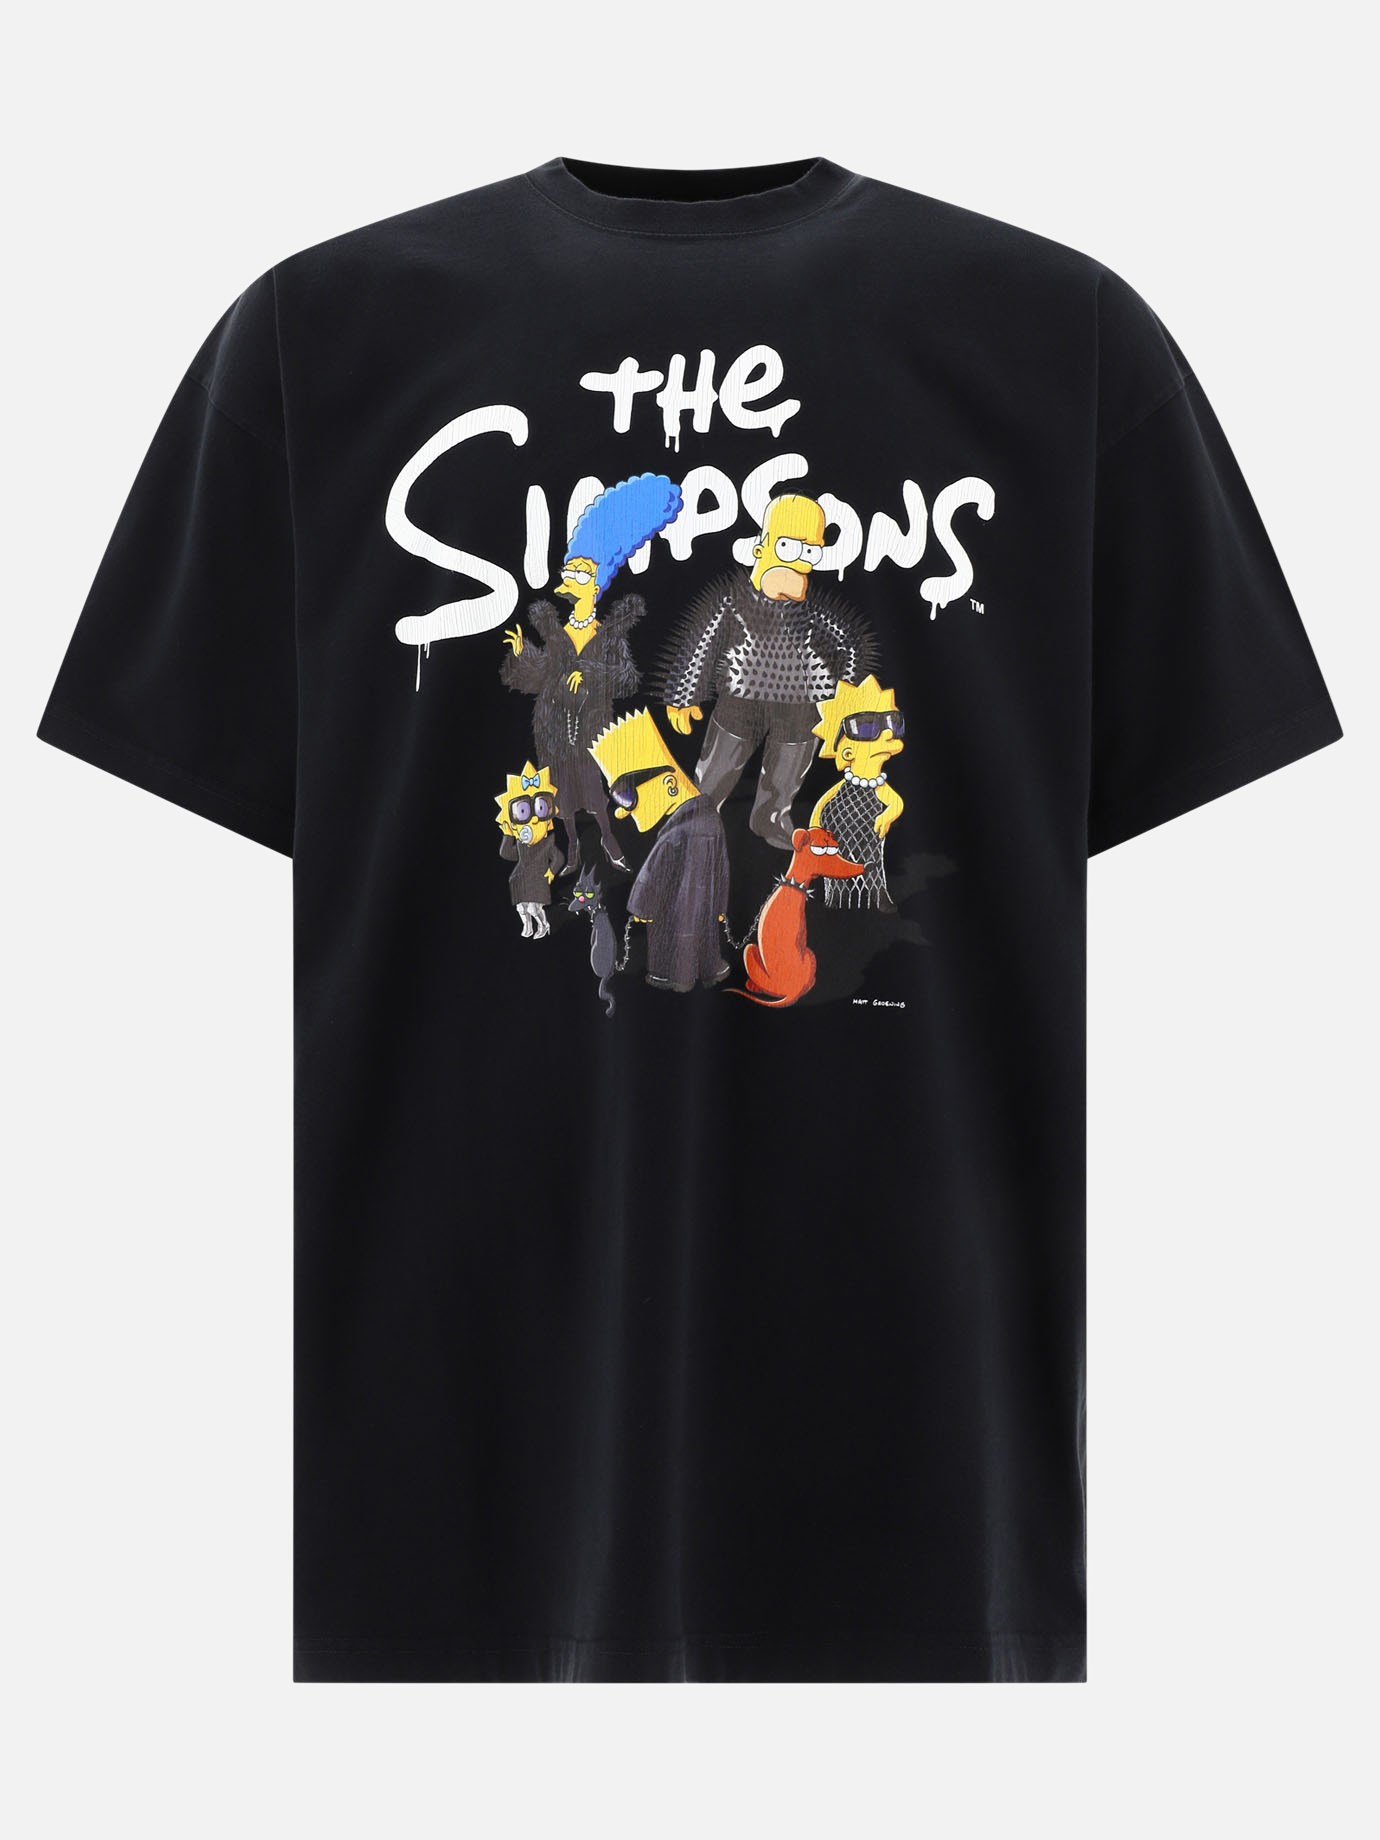  The Simpsons  t-shirtby Balenciaga - 3